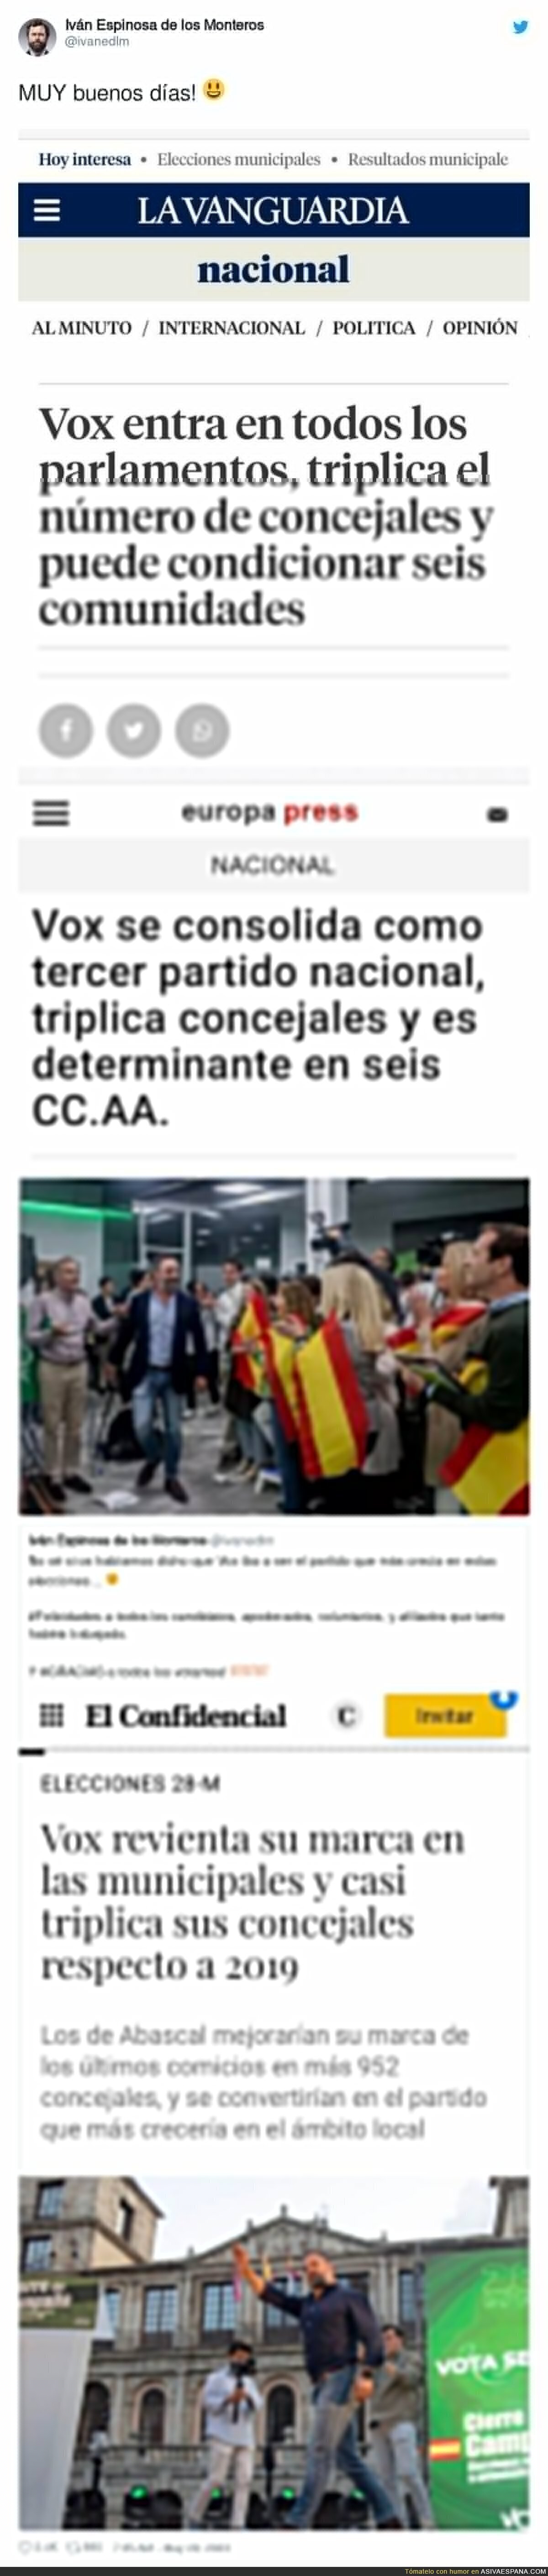 VOX es la clave de todos los gobiernos de España